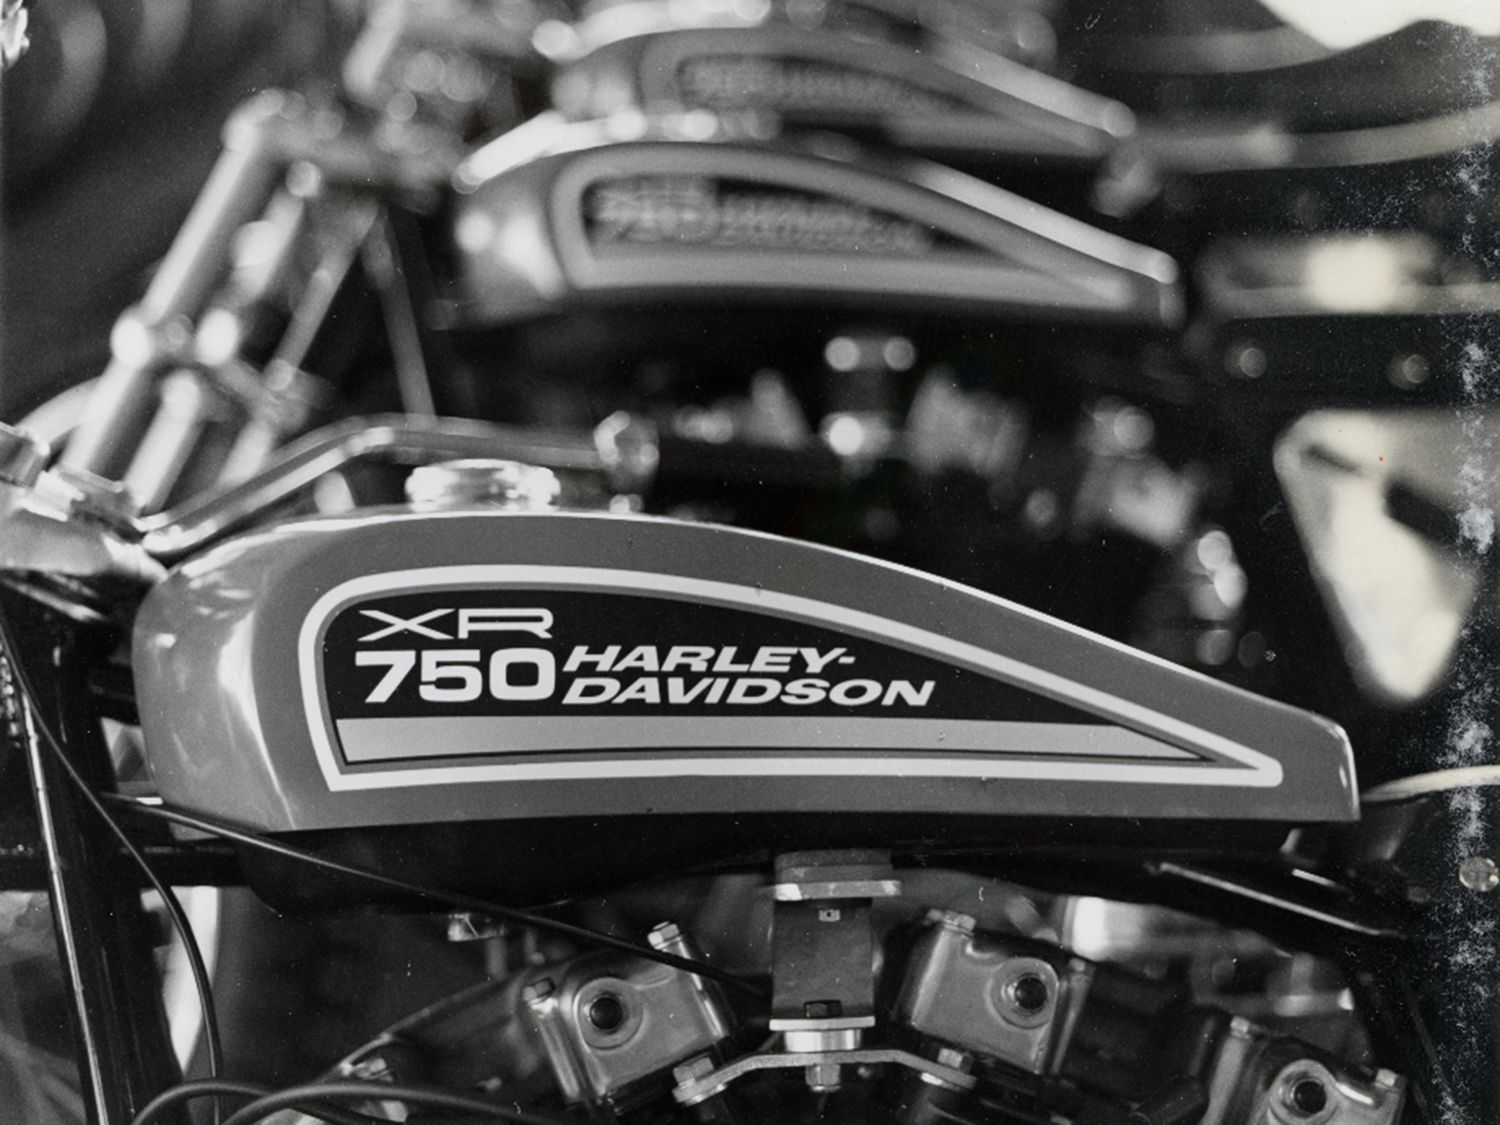 Can the Harley-Davidson XR750 Still Win?